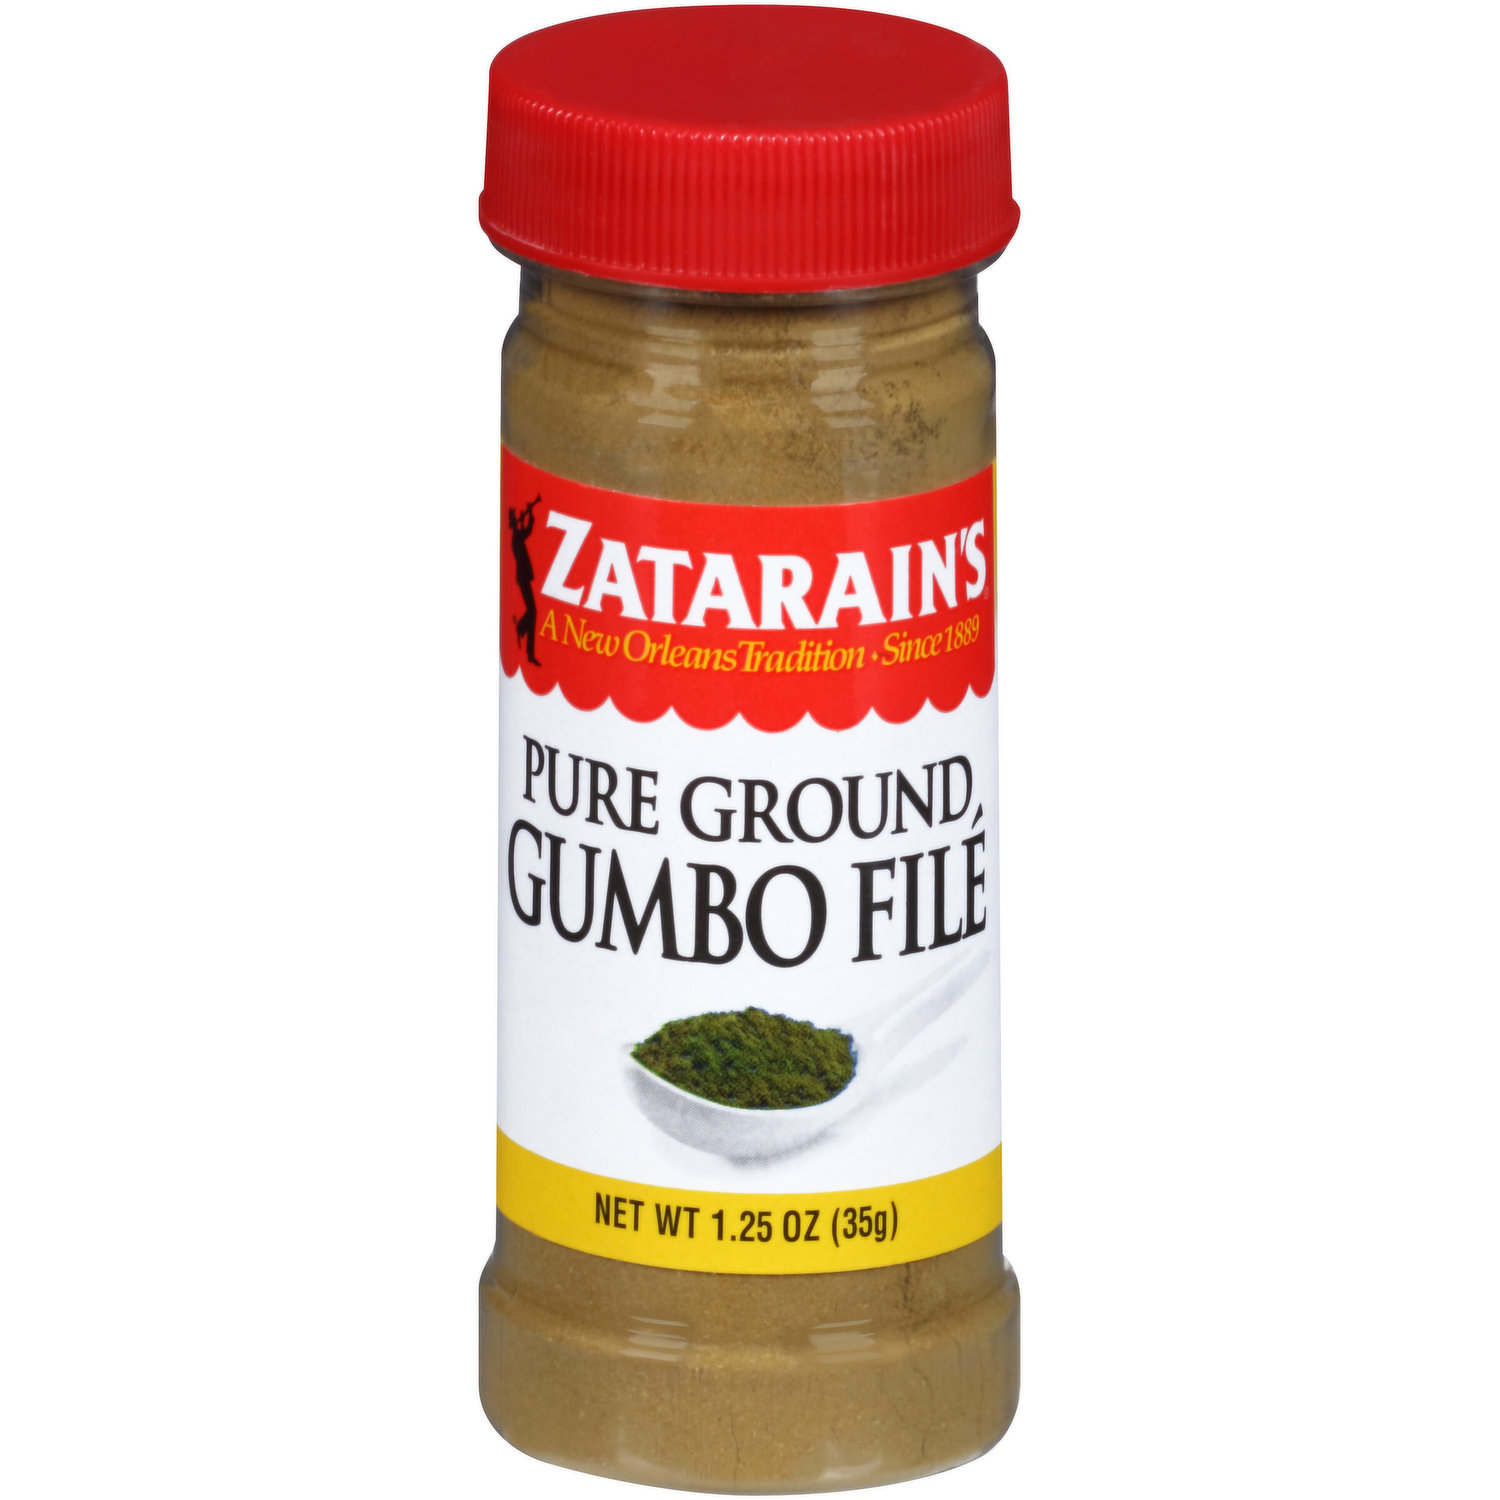 Zatarain's Pure Ground Gumbo File